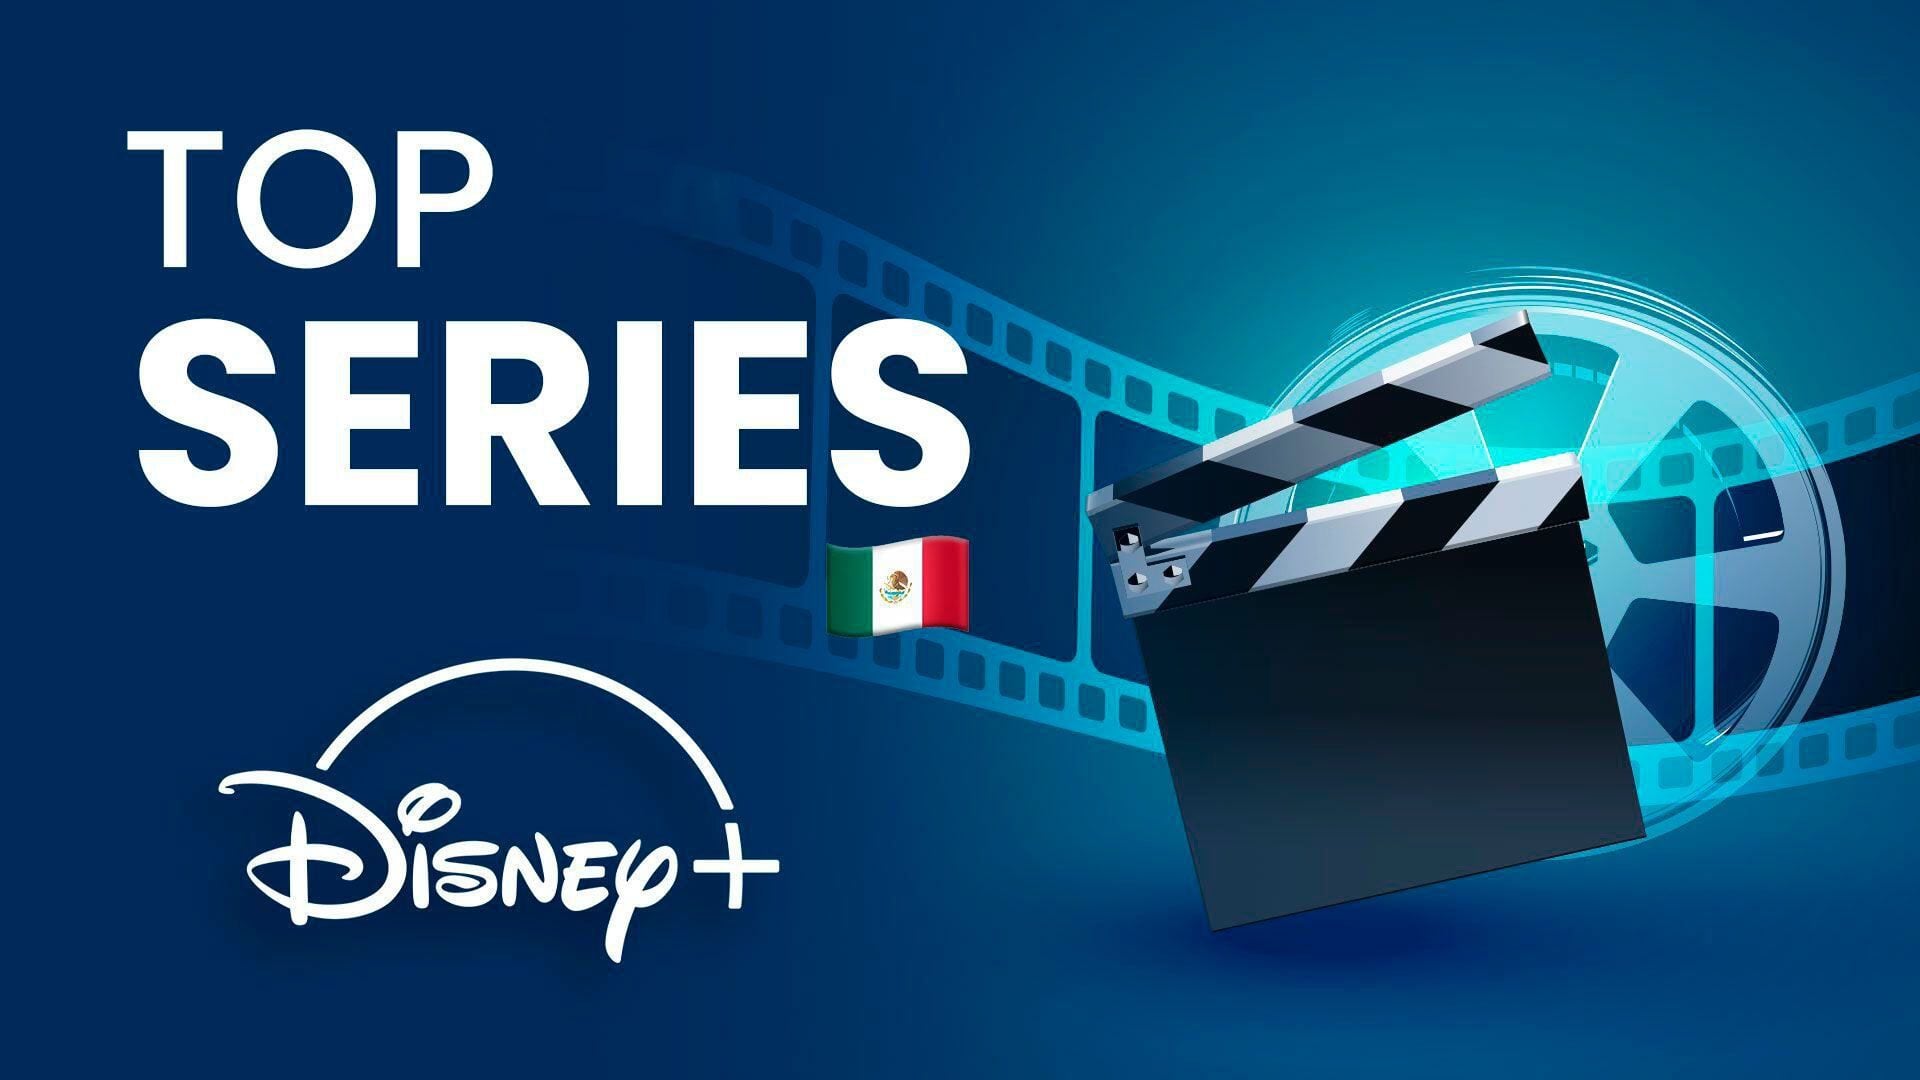 Disney Plus busca ser la plataforma número de streaming al sumar estos títulos a su catálogo. (Infobae)